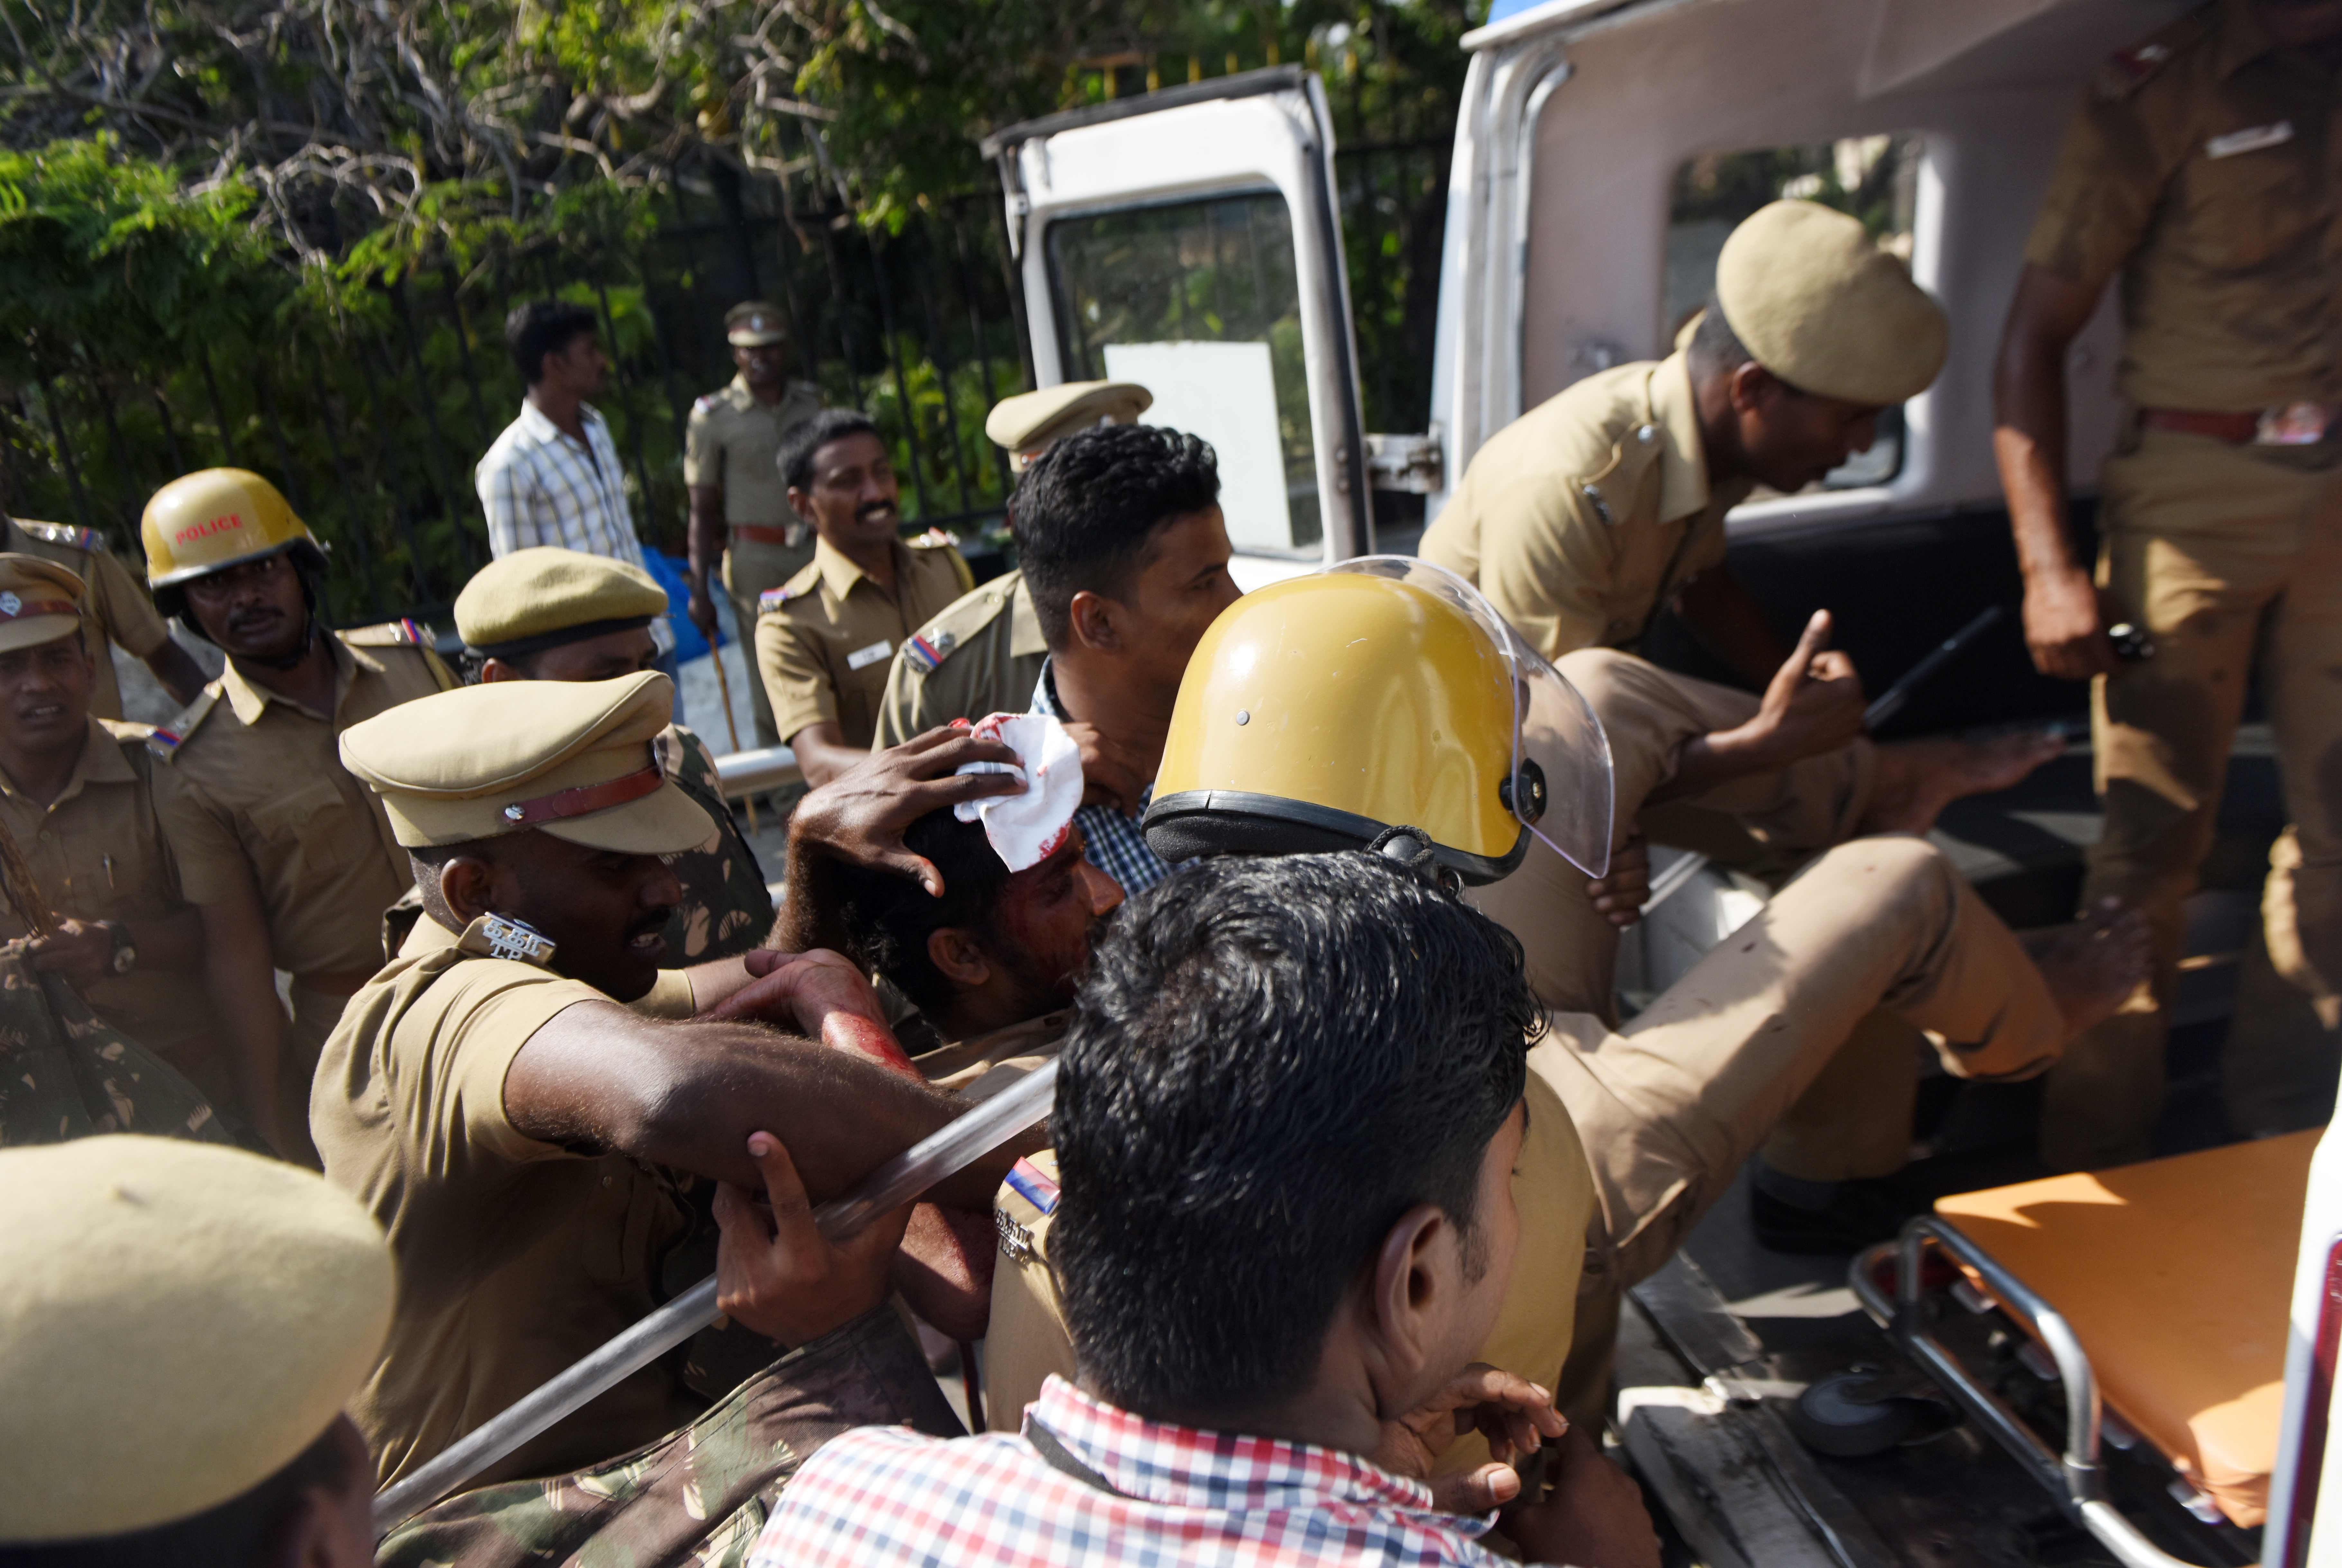 الشرطة الهندية تحتجز المتظاهرون فى السيارات لنقلهم لأماكن الاحتجاز